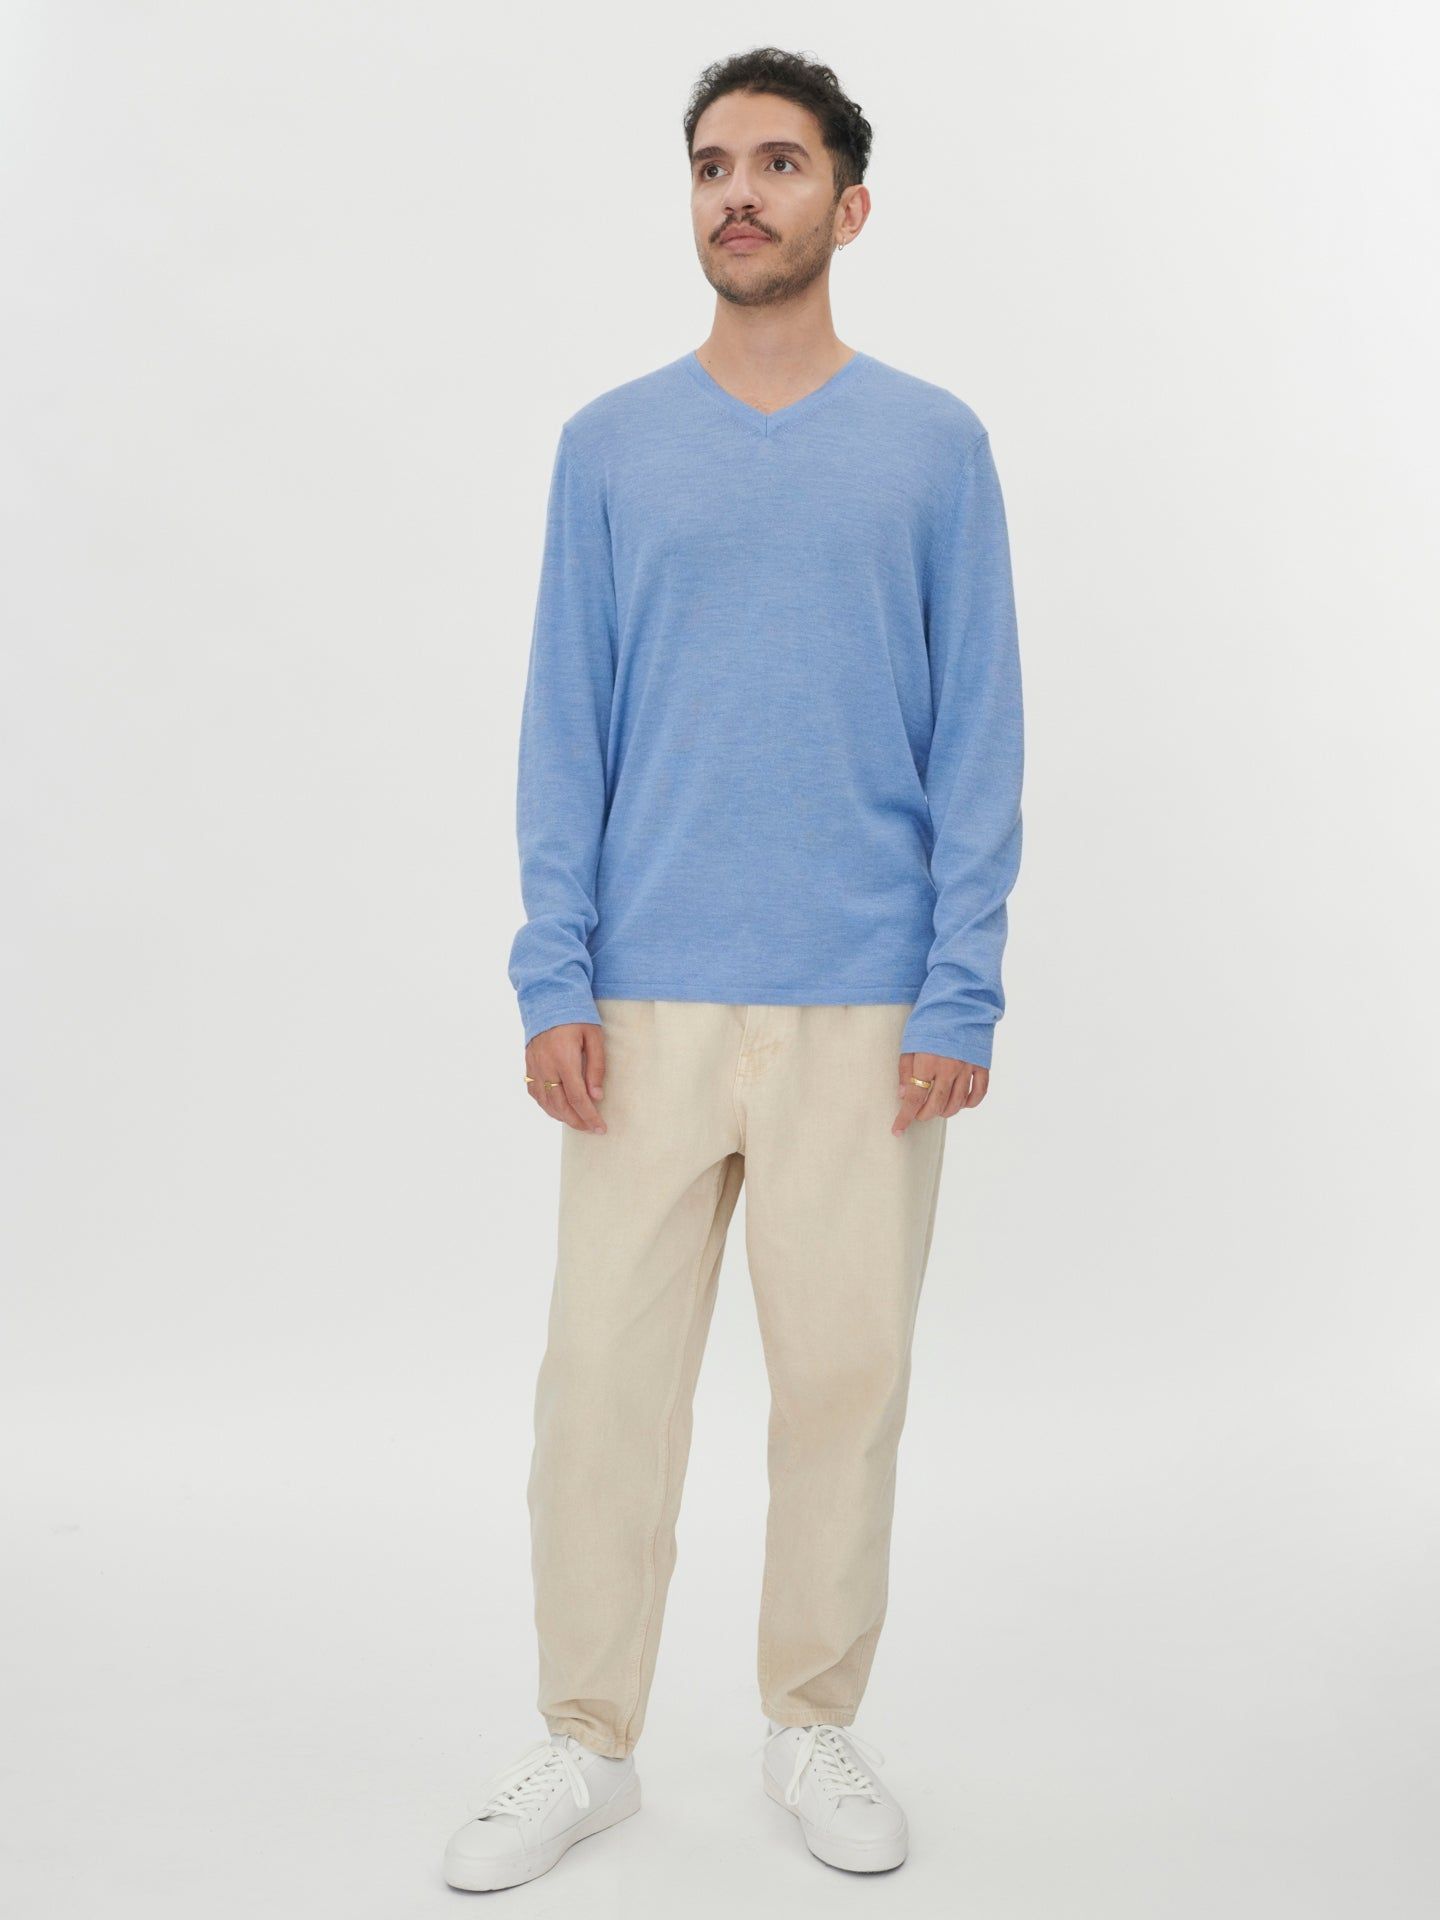 Men's Silk Cashmere V-Neck Blue - Gobi Cashmere 